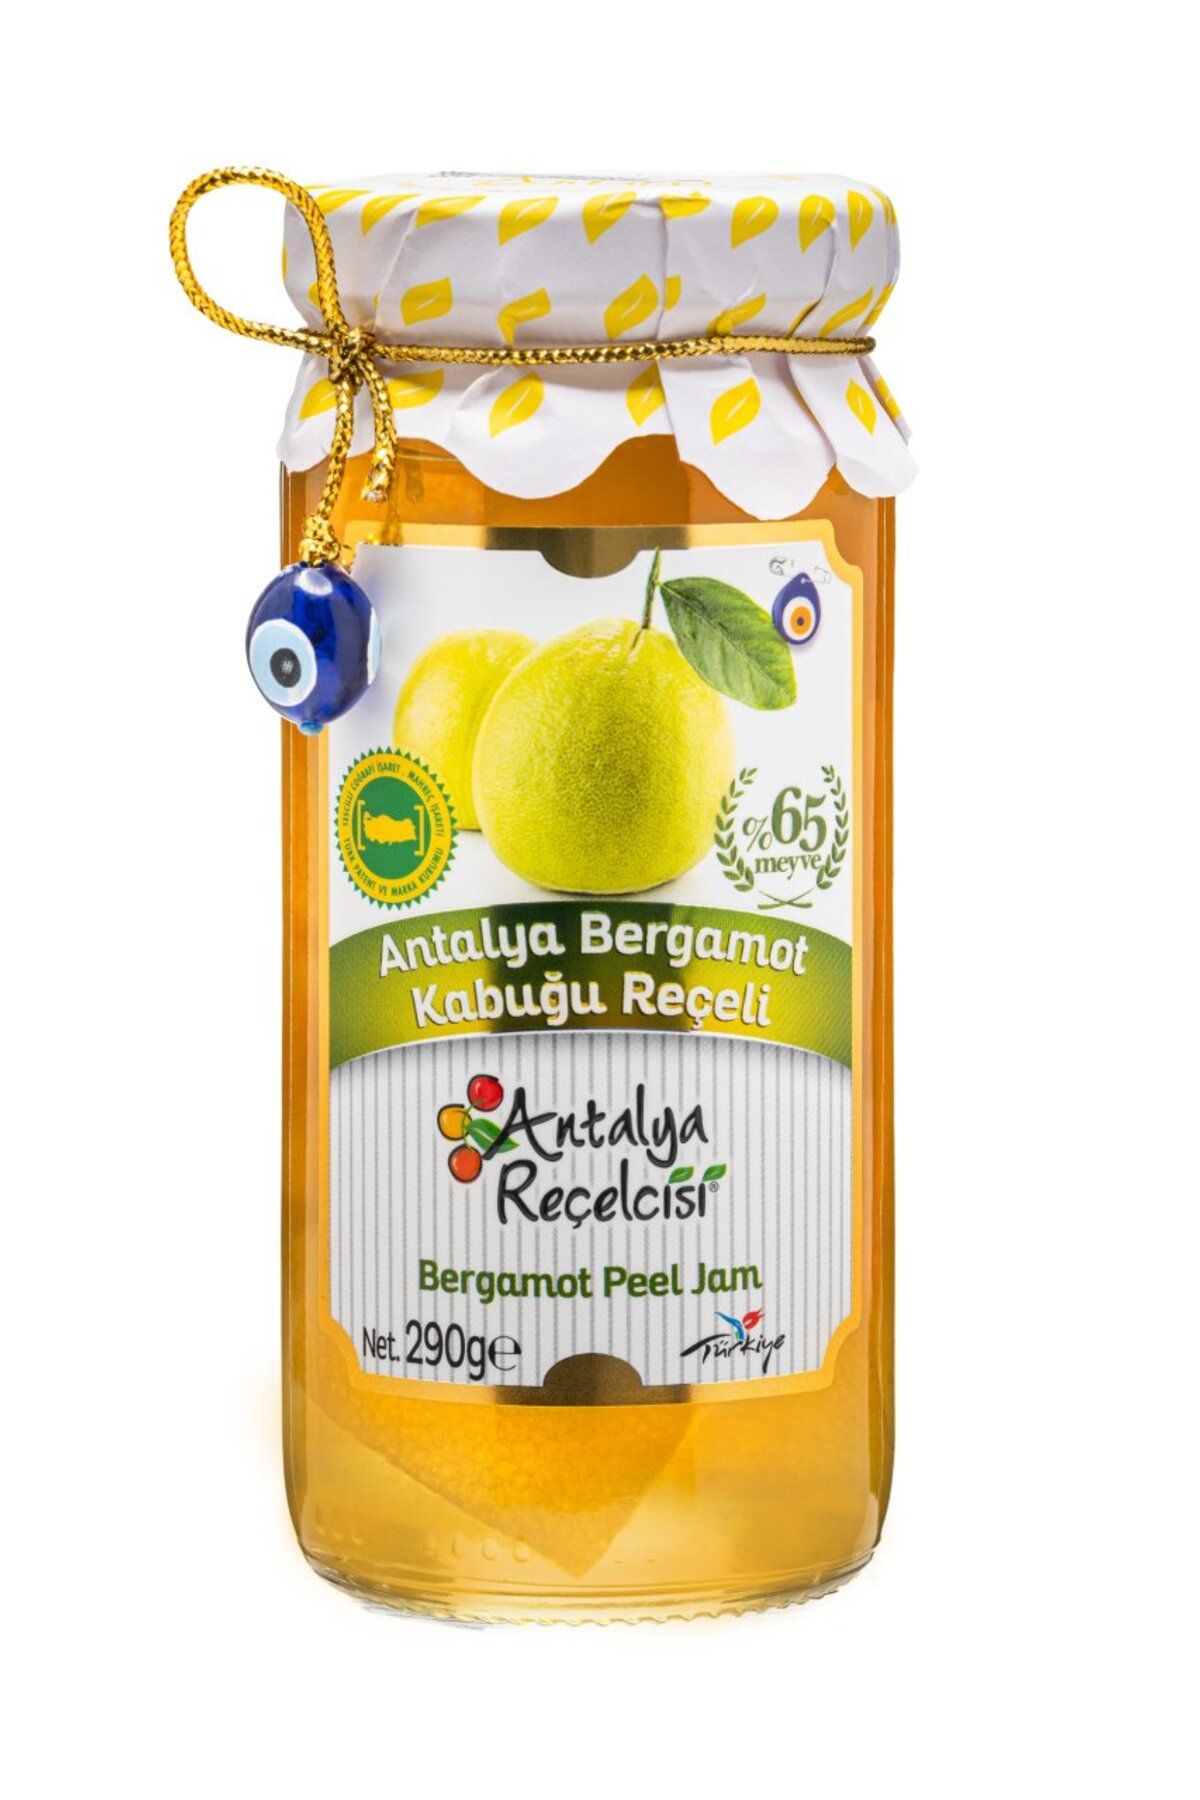 Antalya Reçelcisi Bergamot Kabuğu Reçeli Gurme Serisi %65 Meyve 290gr